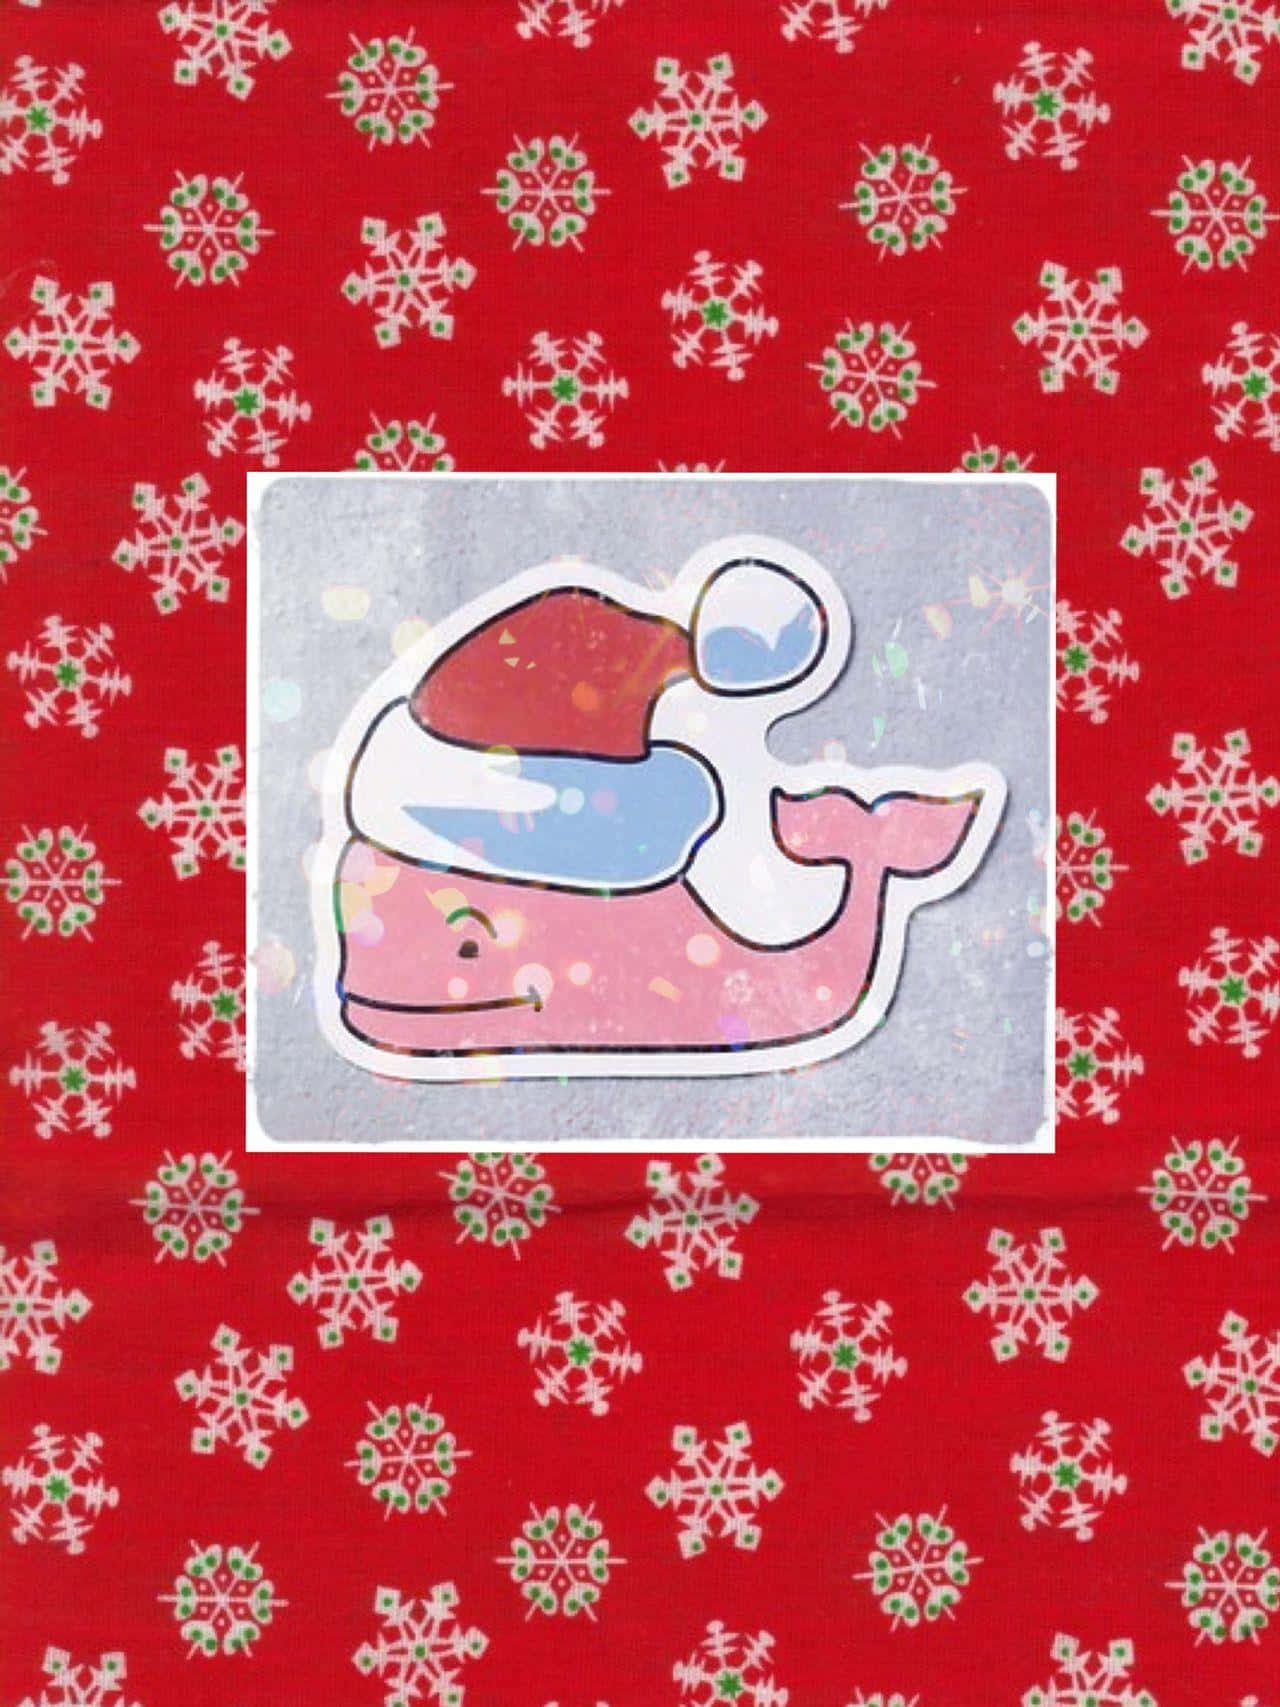 Einrosa Wal Mit Einer Weihnachtsmütze Auf Einem Roten Hintergrund. Wallpaper